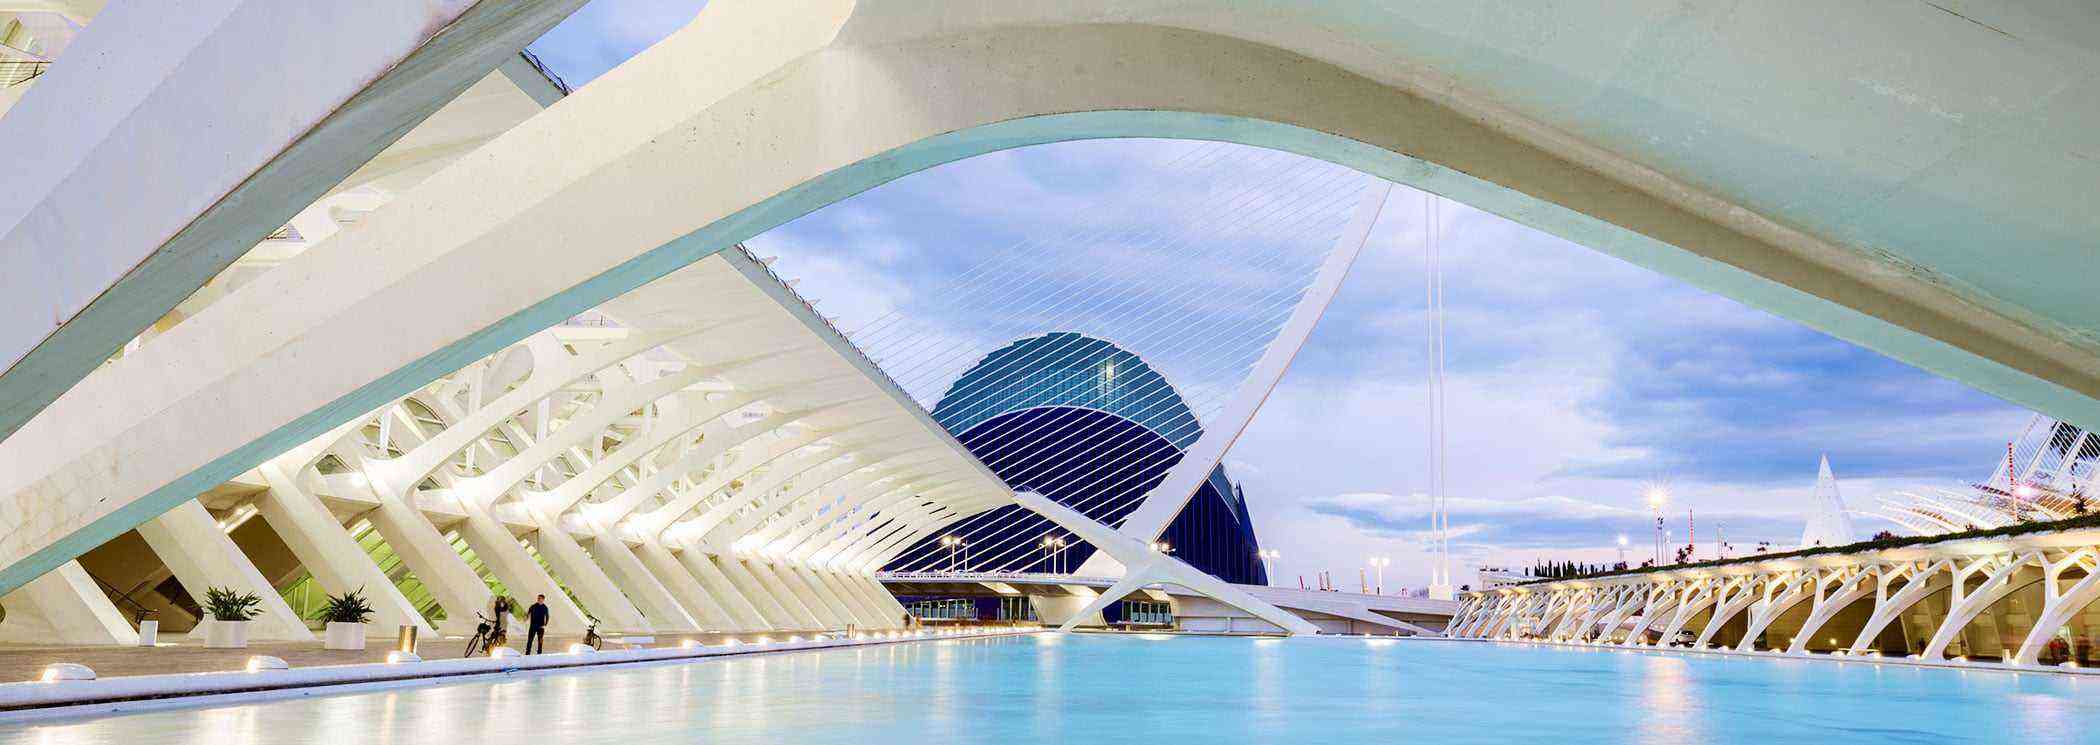 Valencia-Buildings-City-of-Arts-Sciences-1.jpg